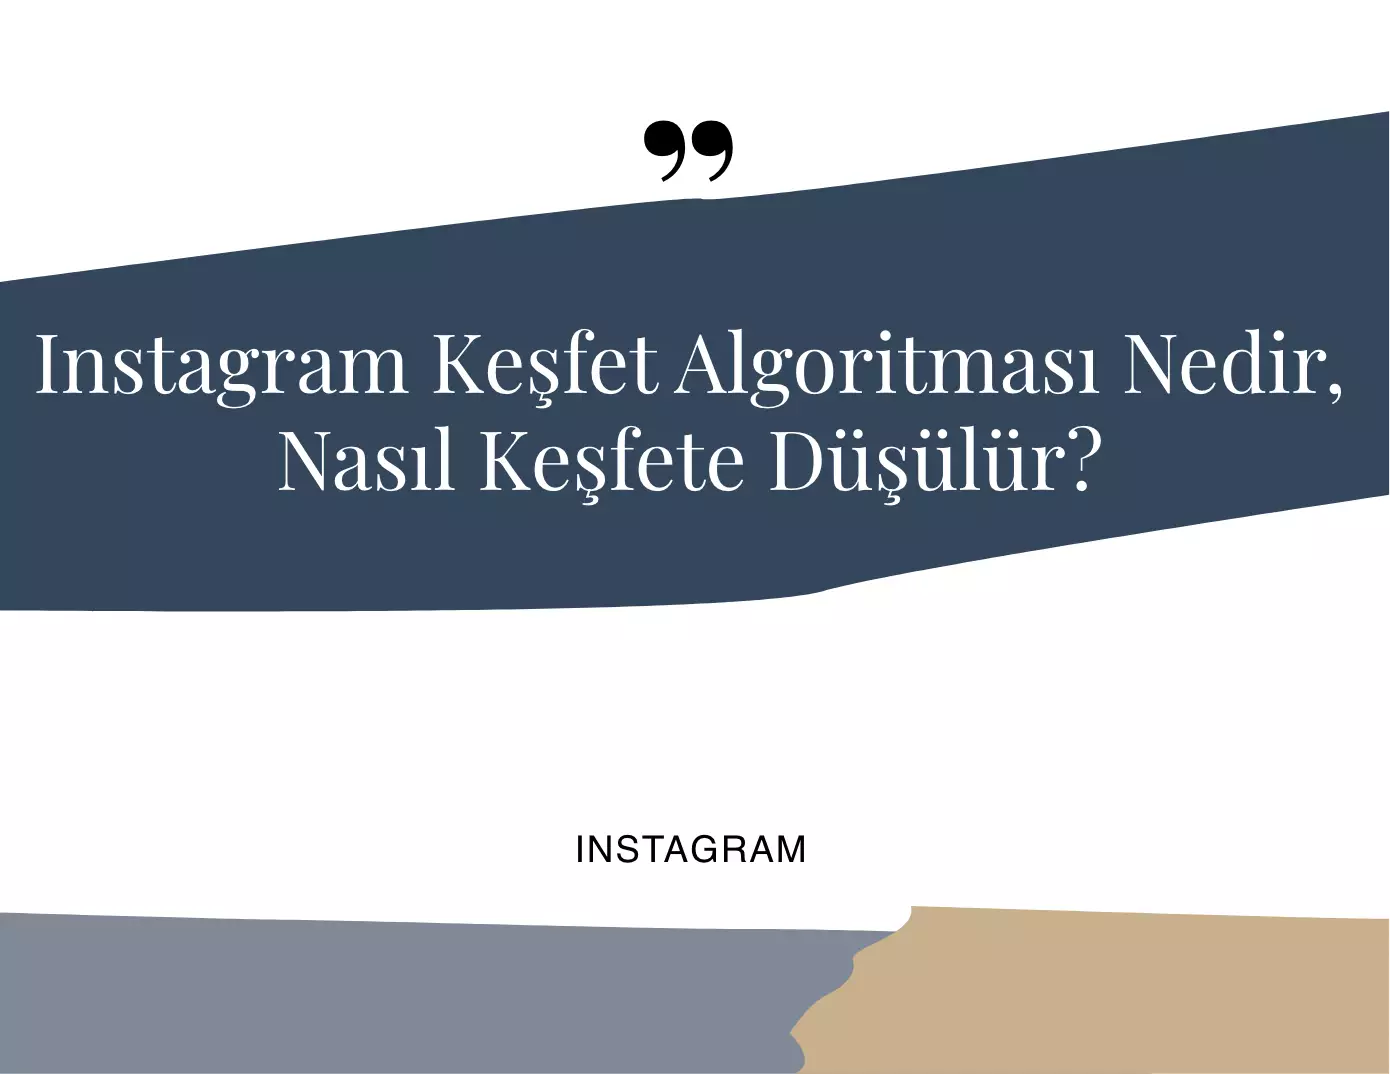 Instagram Keşfet Algoritması Nedir?